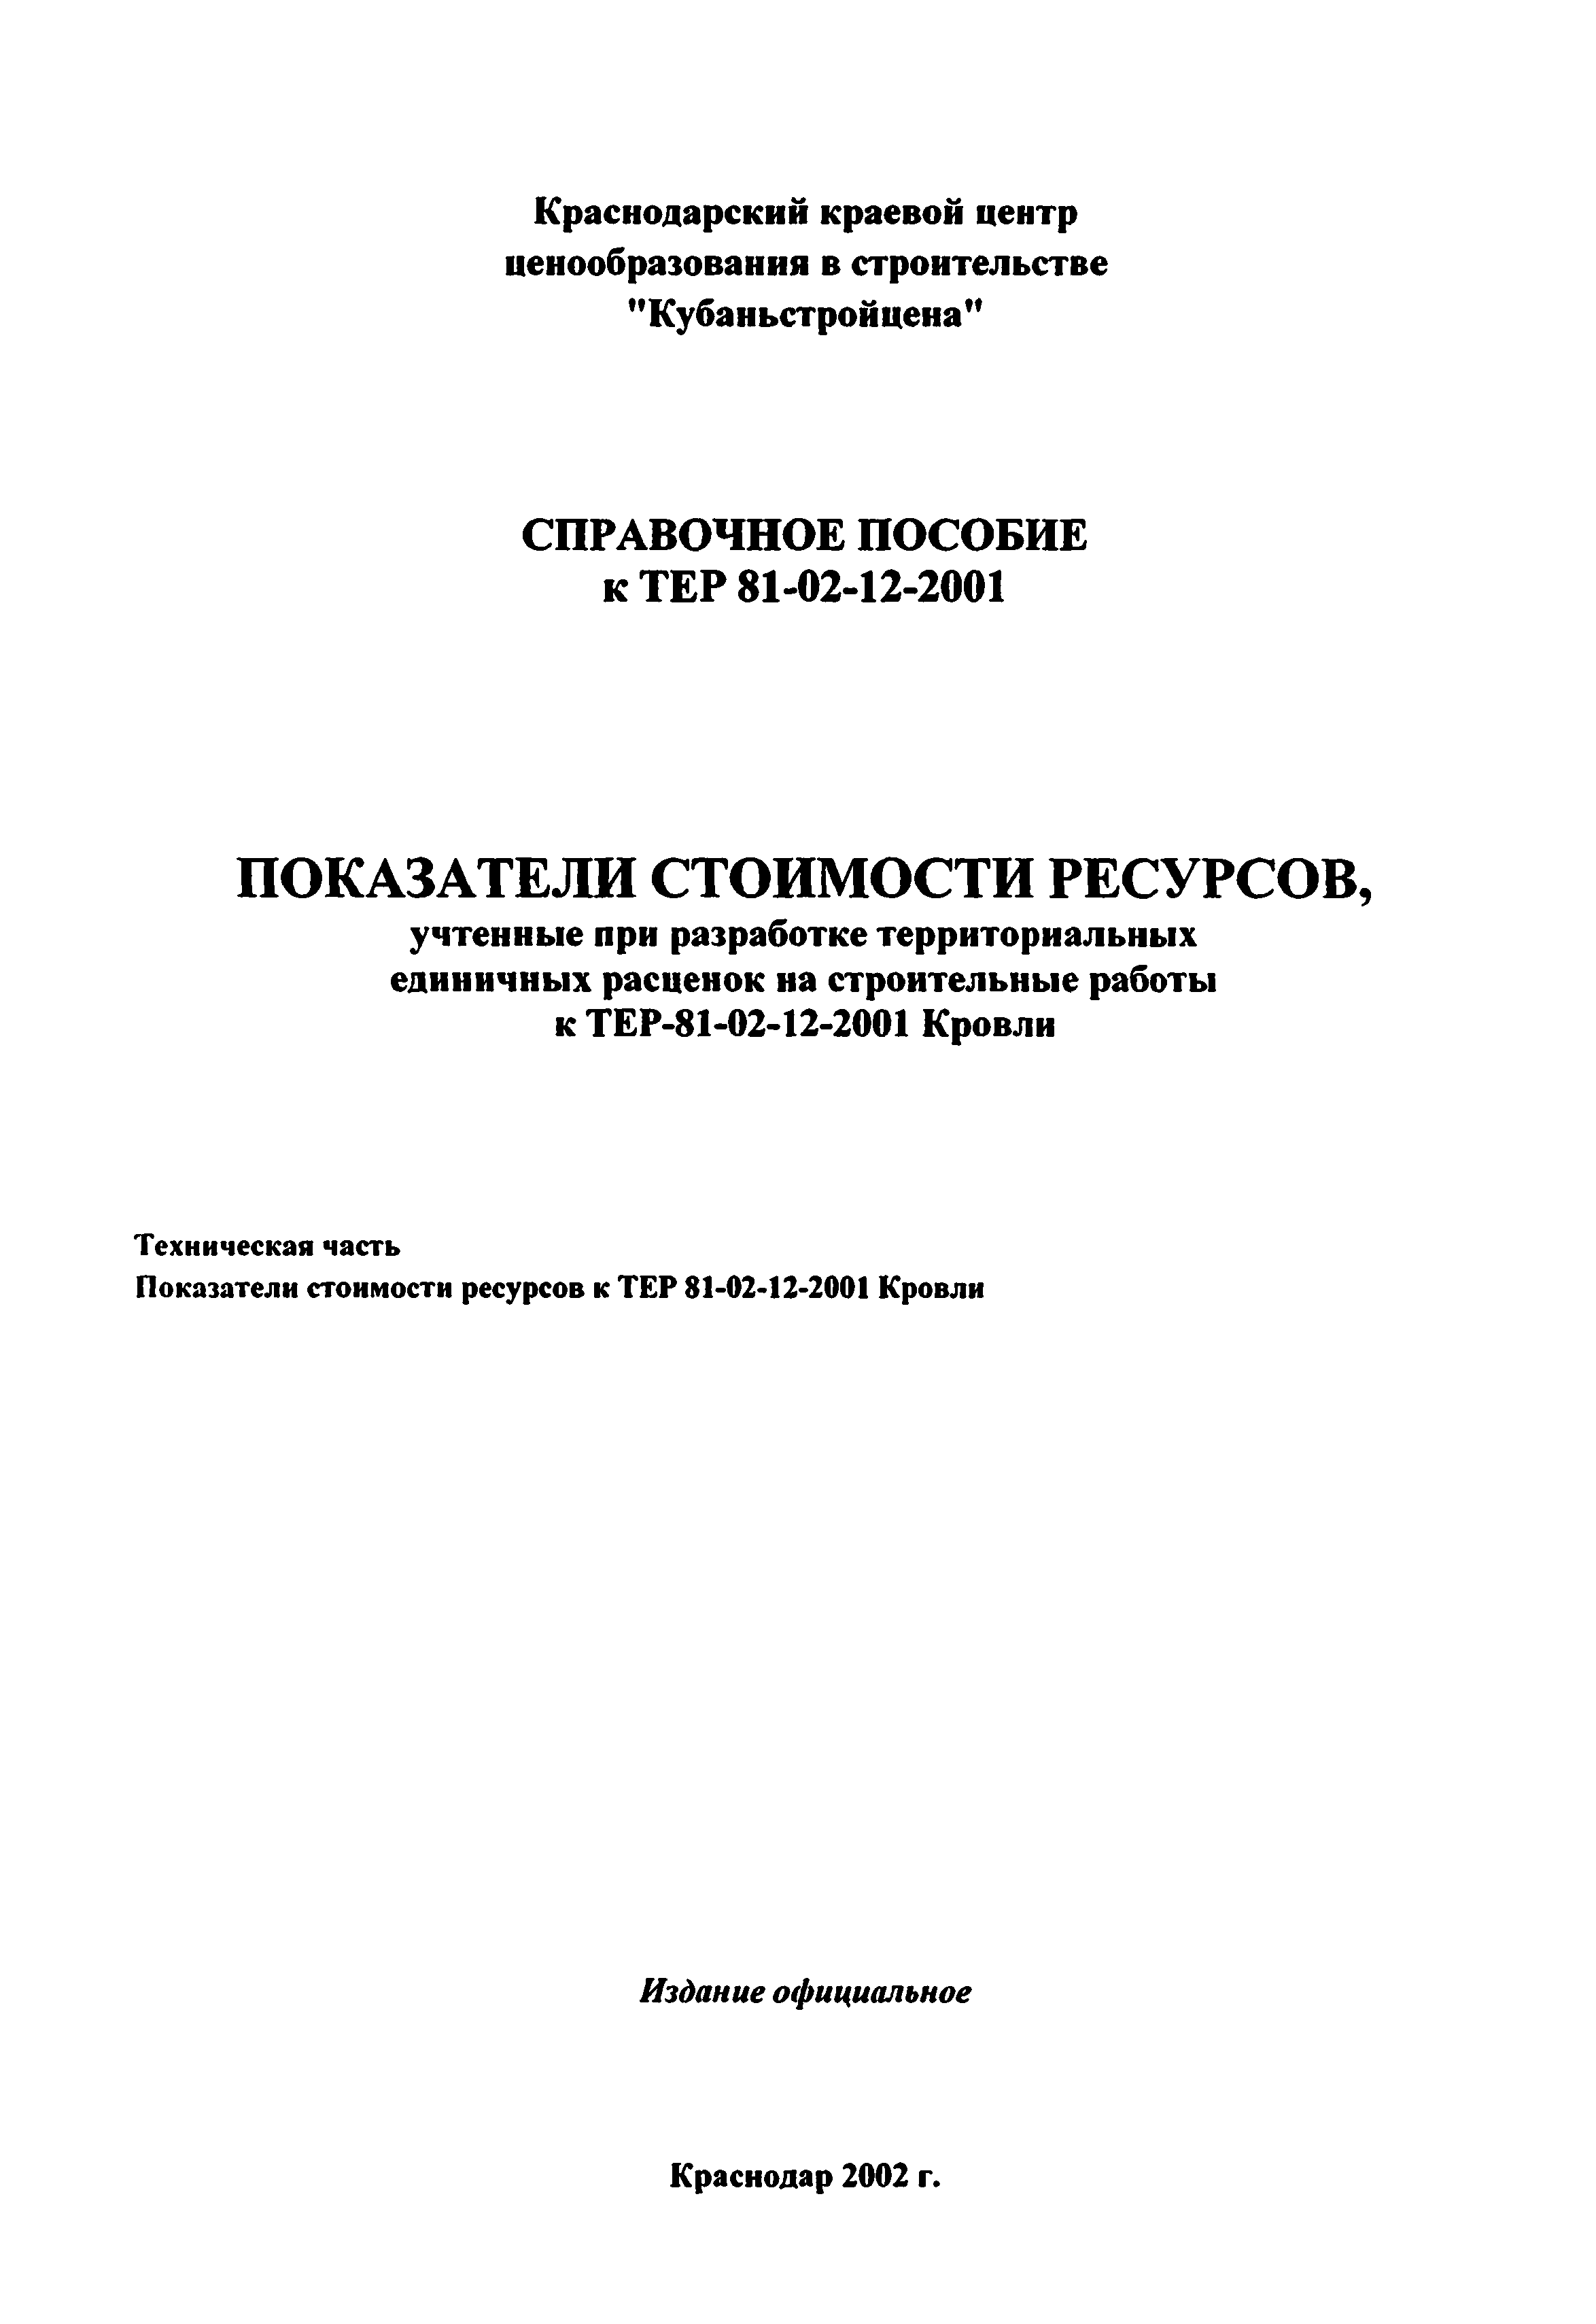 Справочное пособие к ТЕР 81-02-12-2001